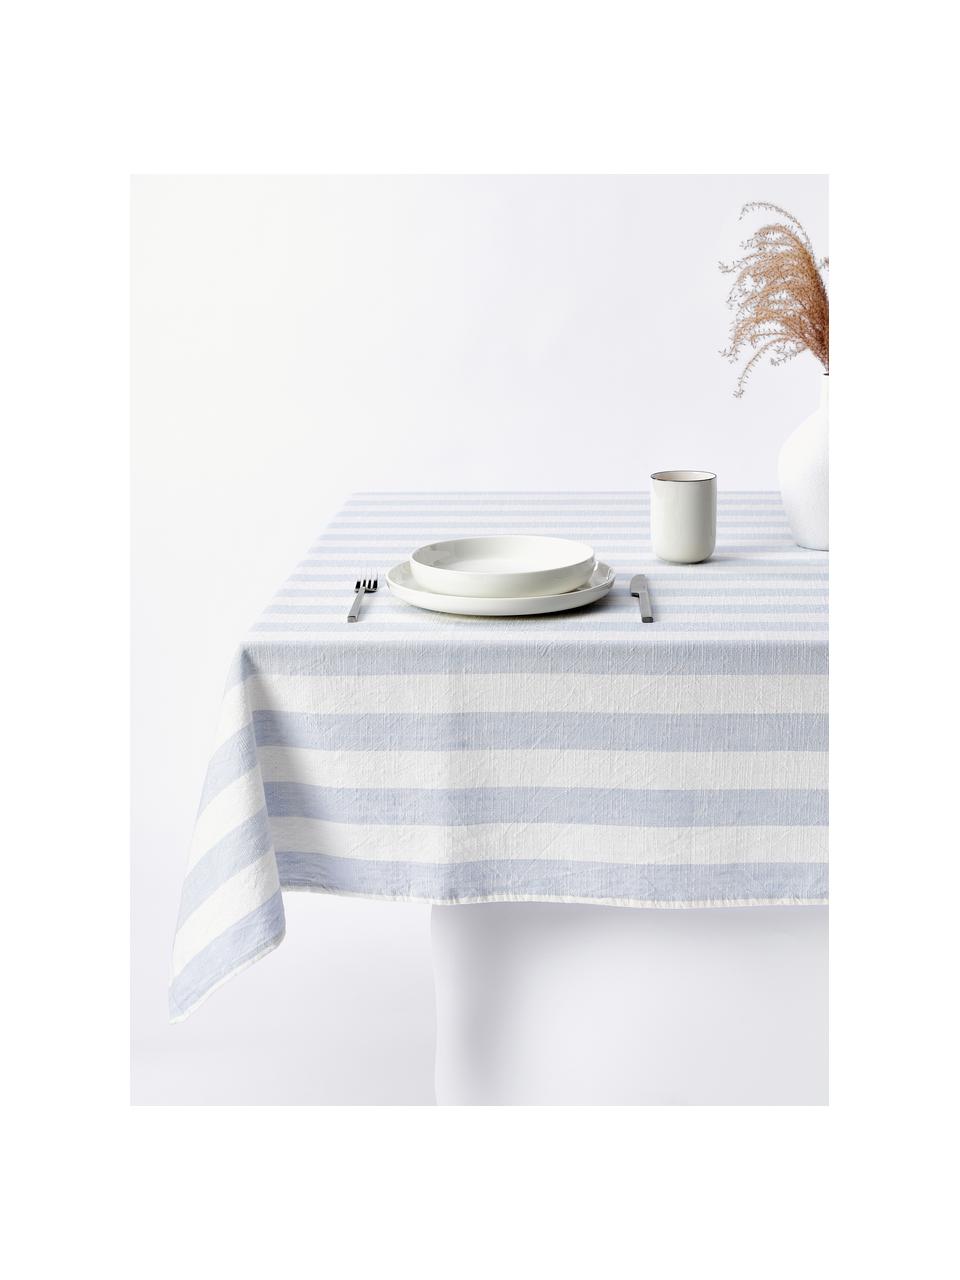 Gestreept tafelkleed Strip, 100% katoen, Wit, lichtblauw, 6-8 personen (B 140 x L 200 cm)